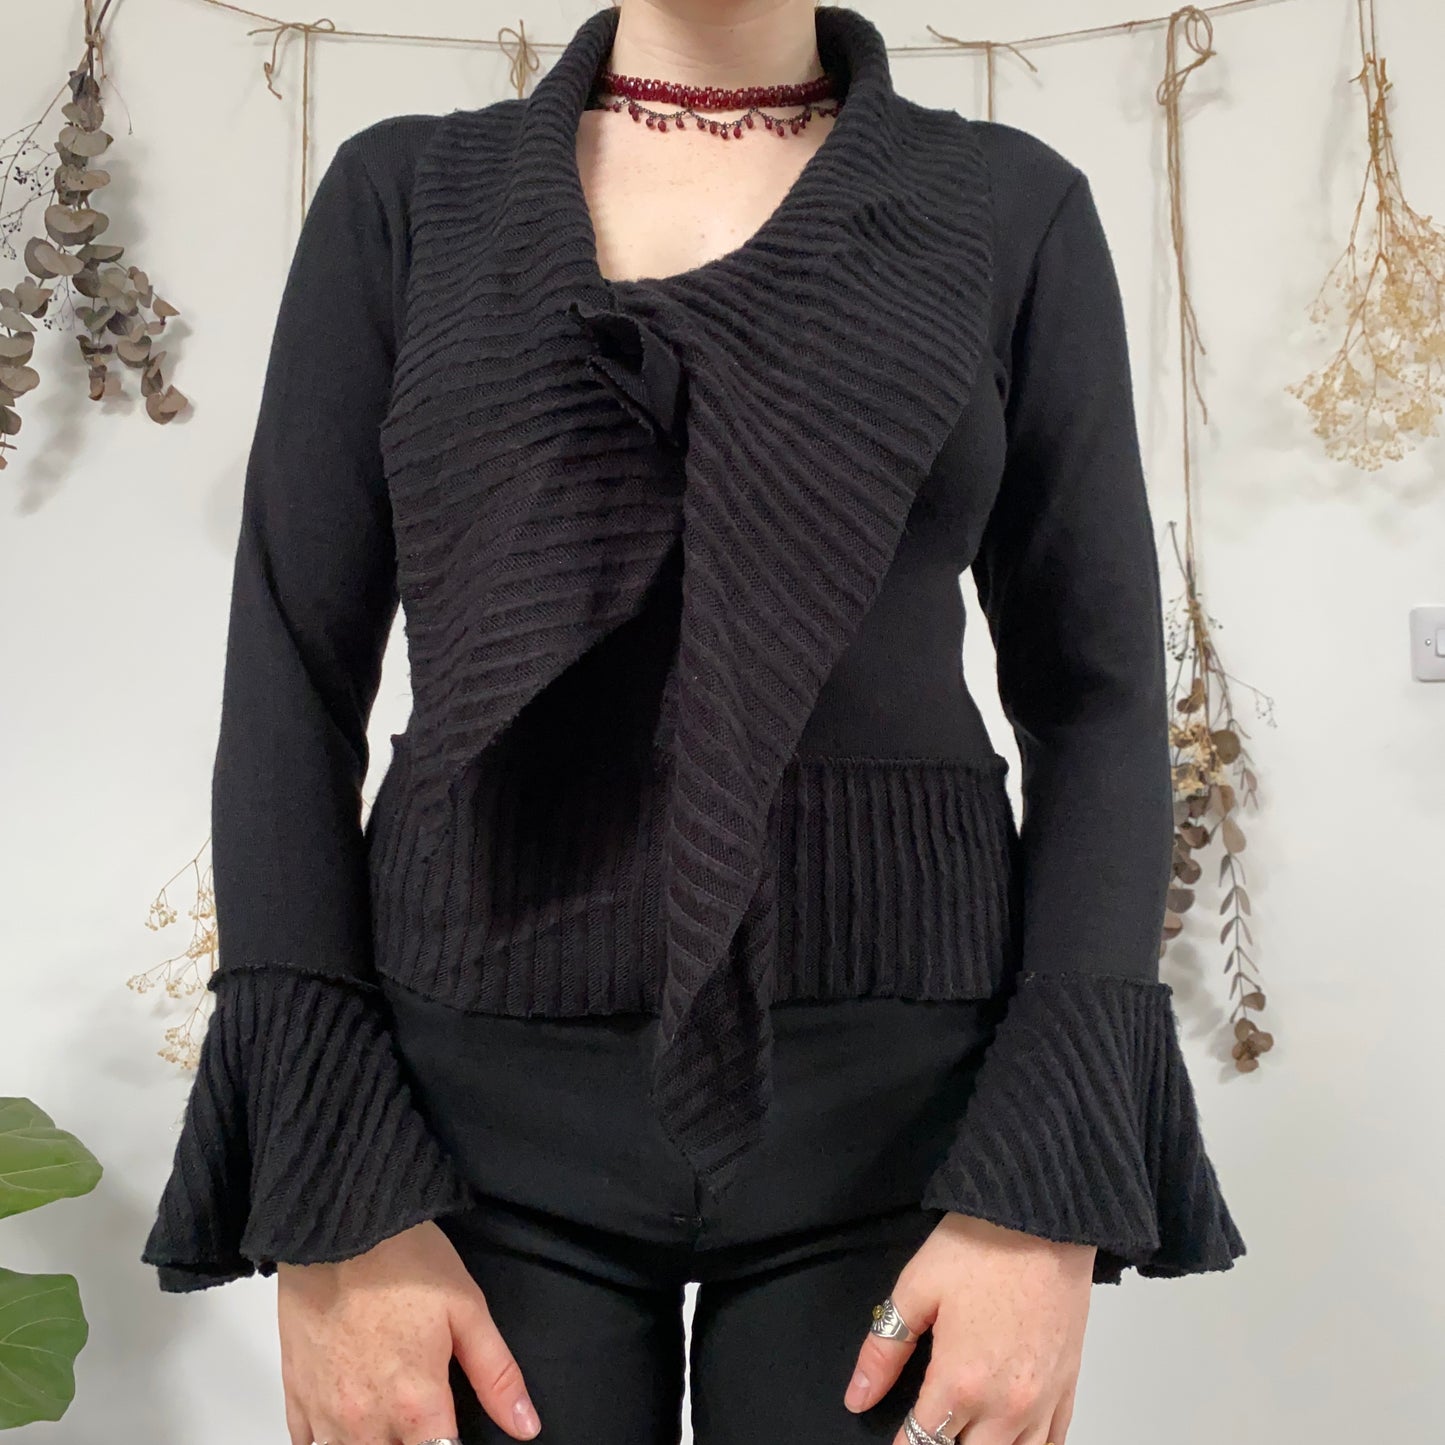 Black knit top - size M